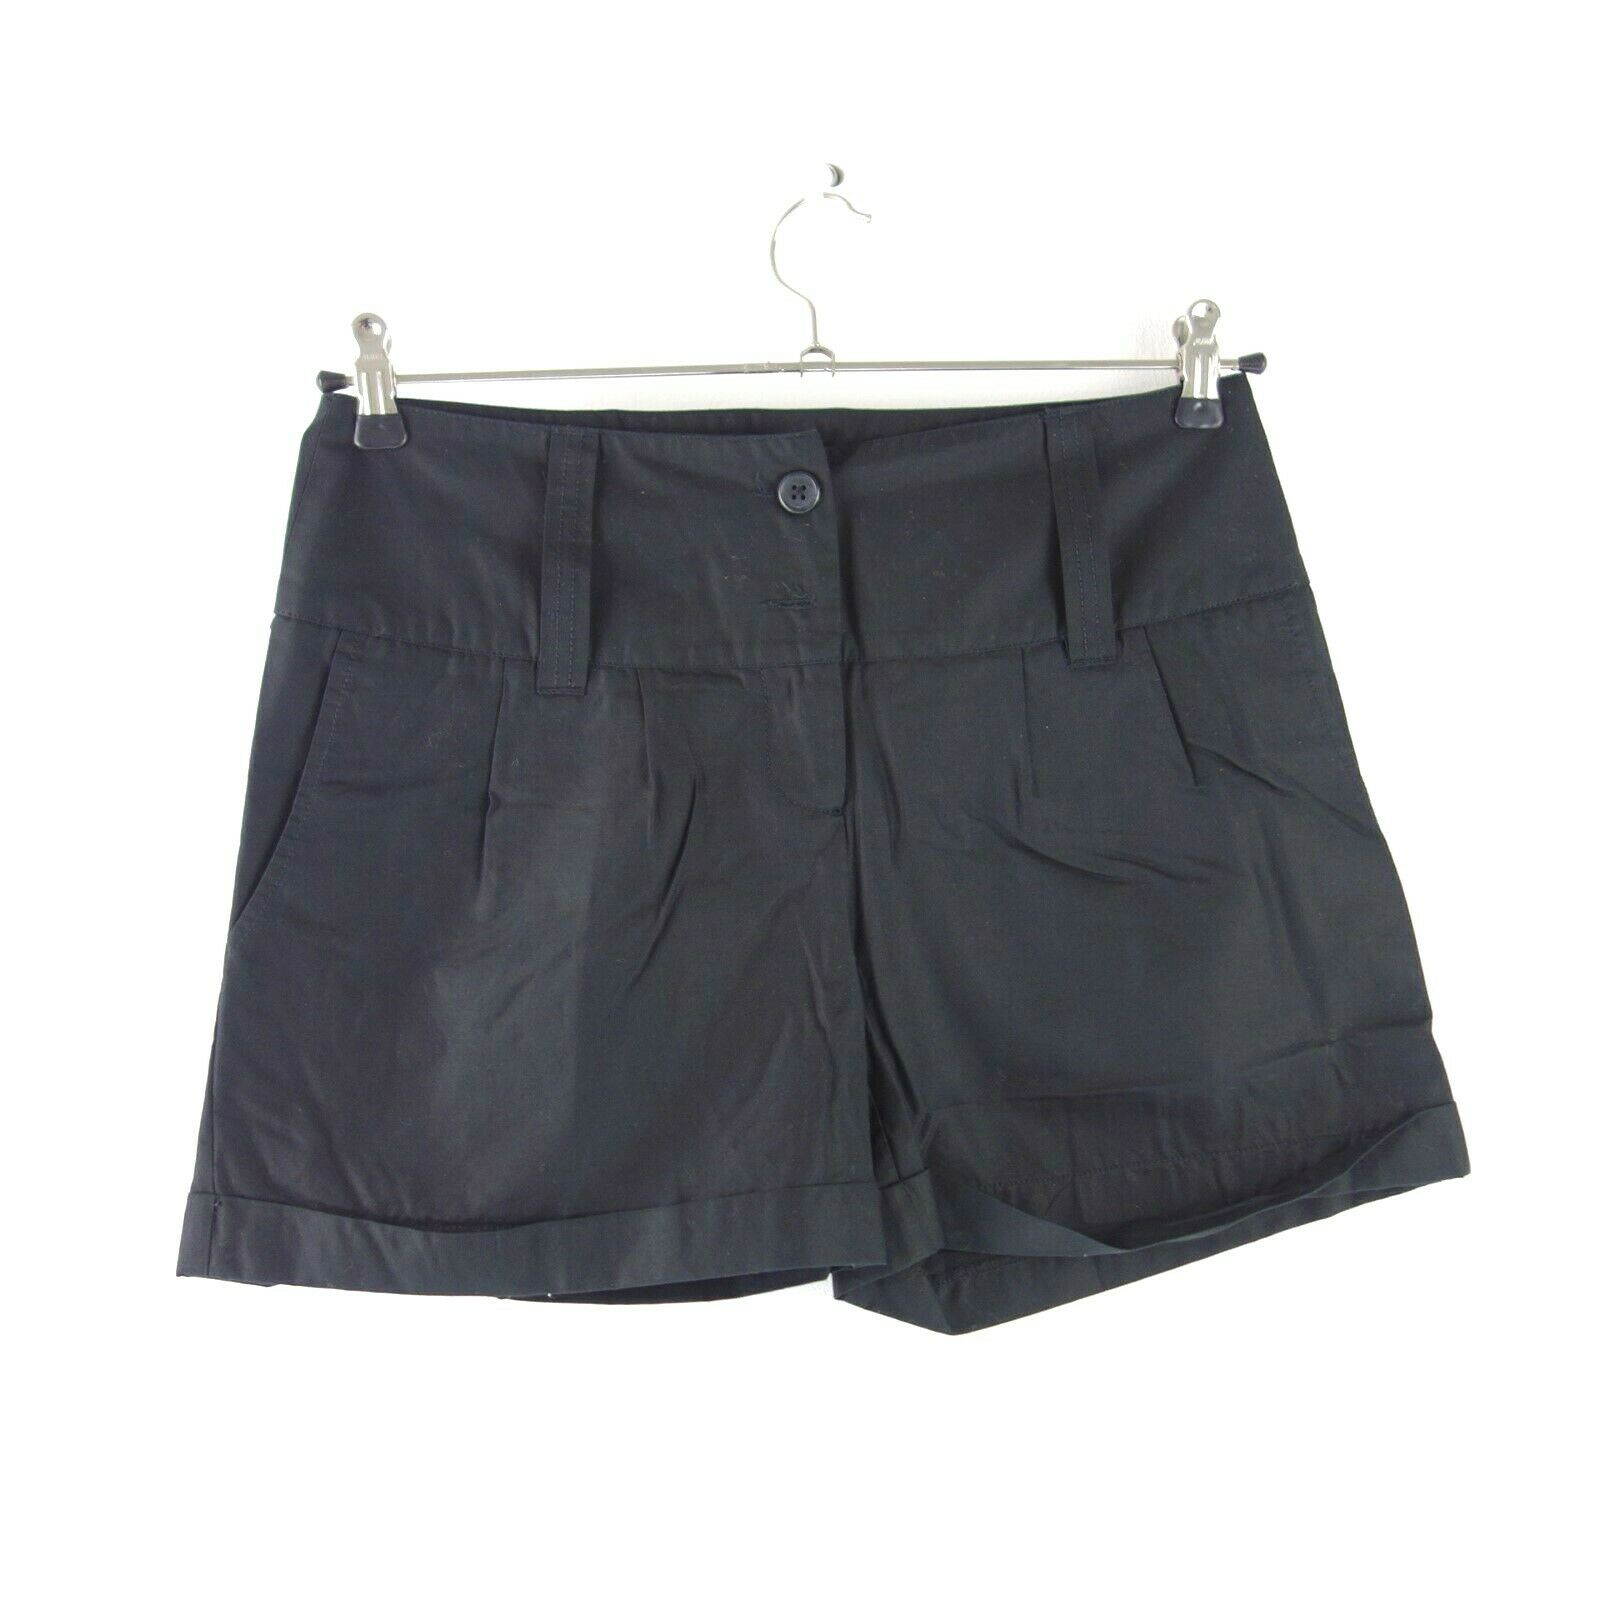 Essentiel Damen Shorts Hotpants Modell Orval Gr 36 Schwarz Kurze Hose Baumwolle